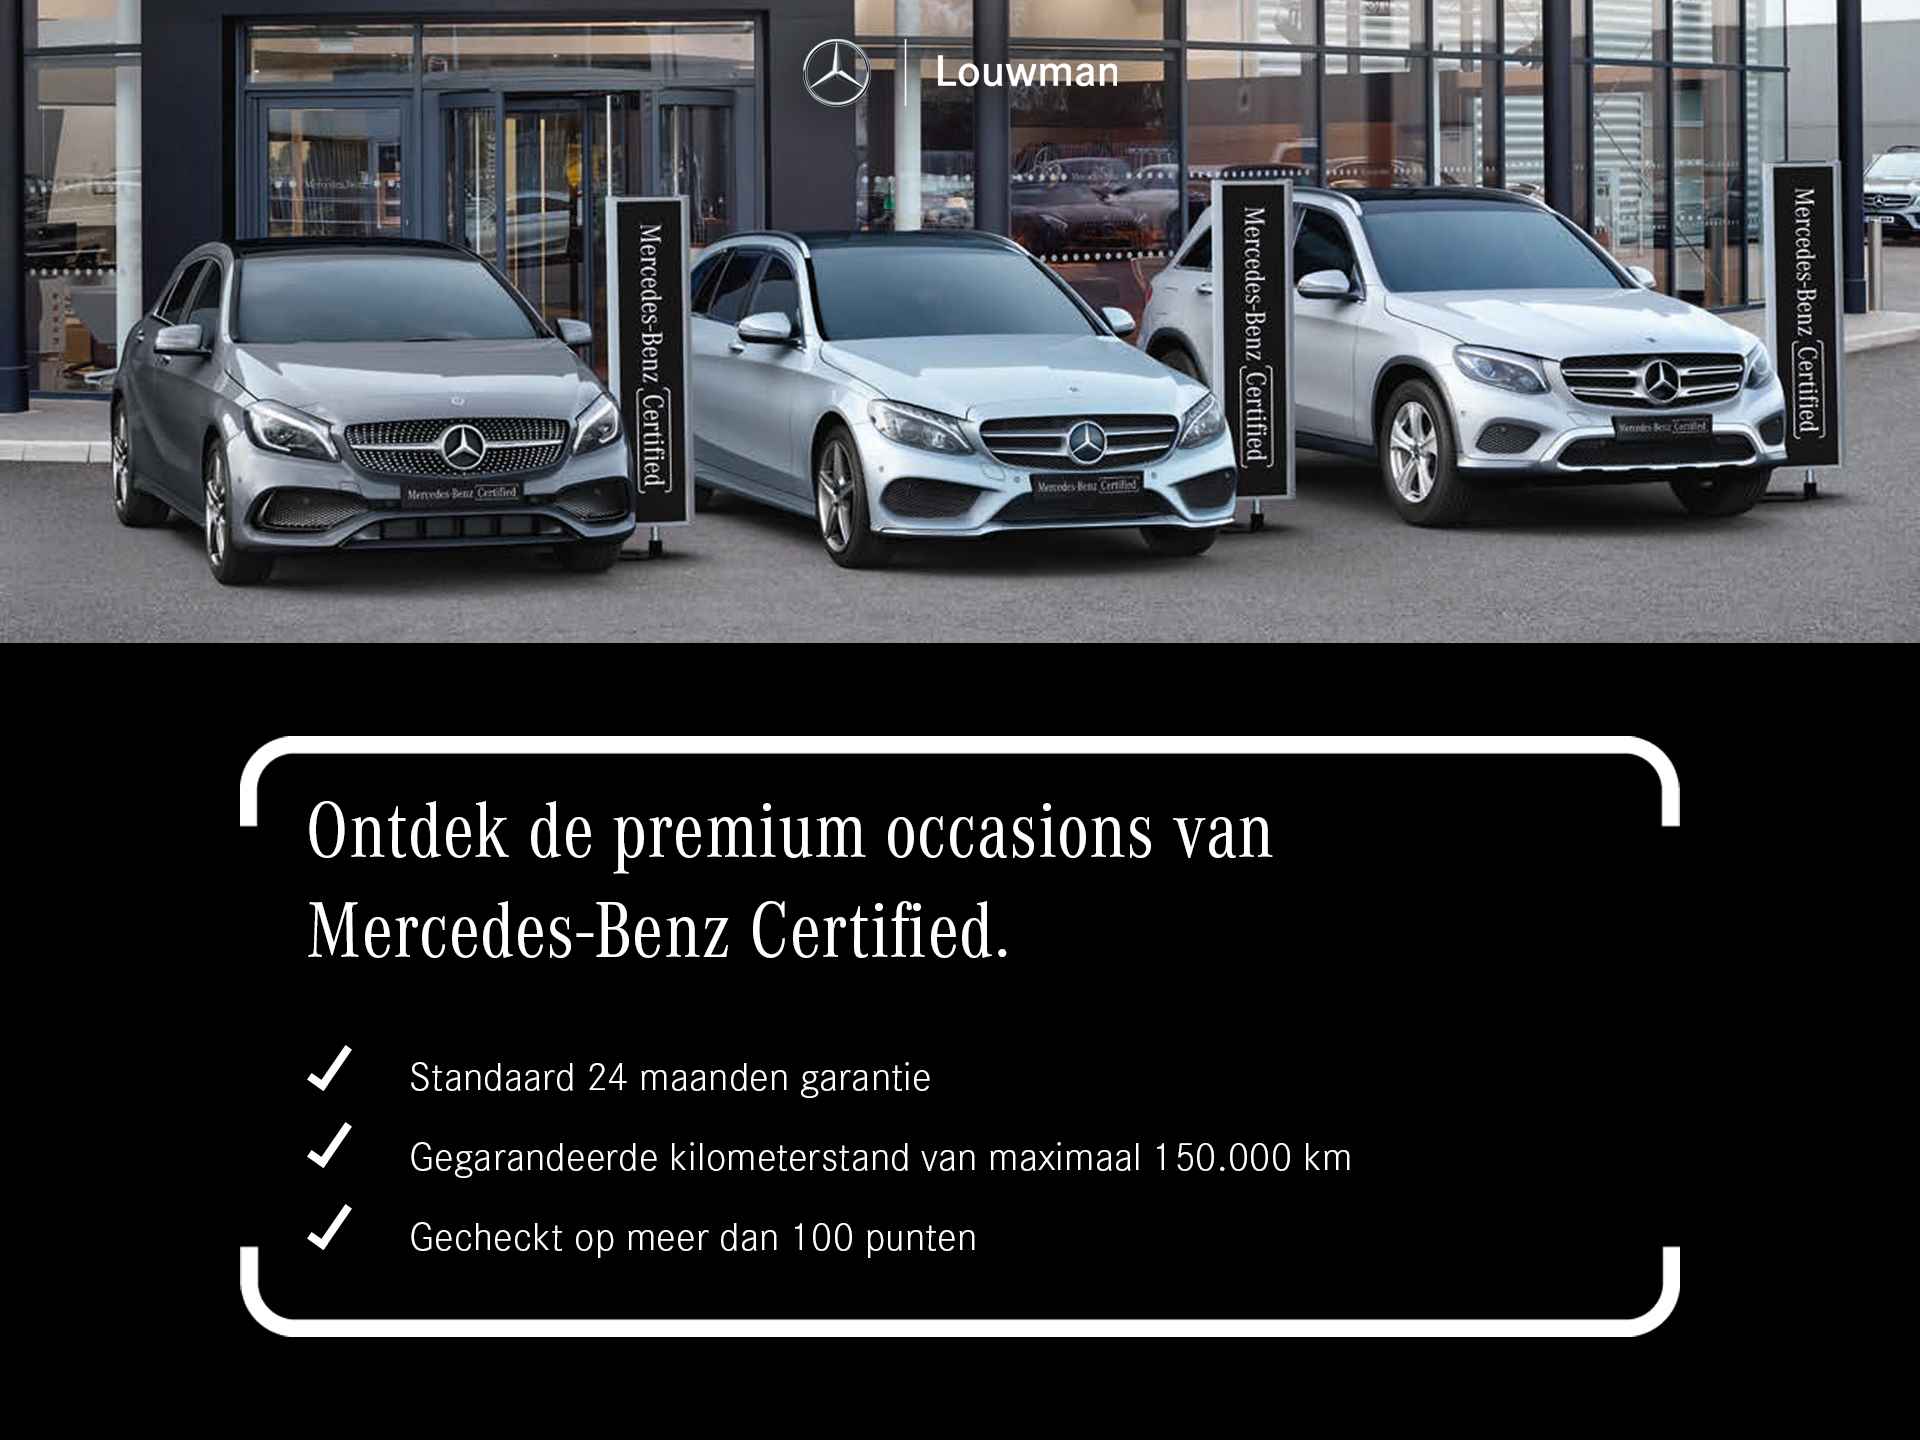 Mercedes-Benz C-Klasse 180 Luxury Line AMG lichtmetalen velgen | Navigatie | MBUX | Parking support | Trekhaak elct wegklapbaar | inclusief 24 maanden MB Certified garantie voor europa - 38/38